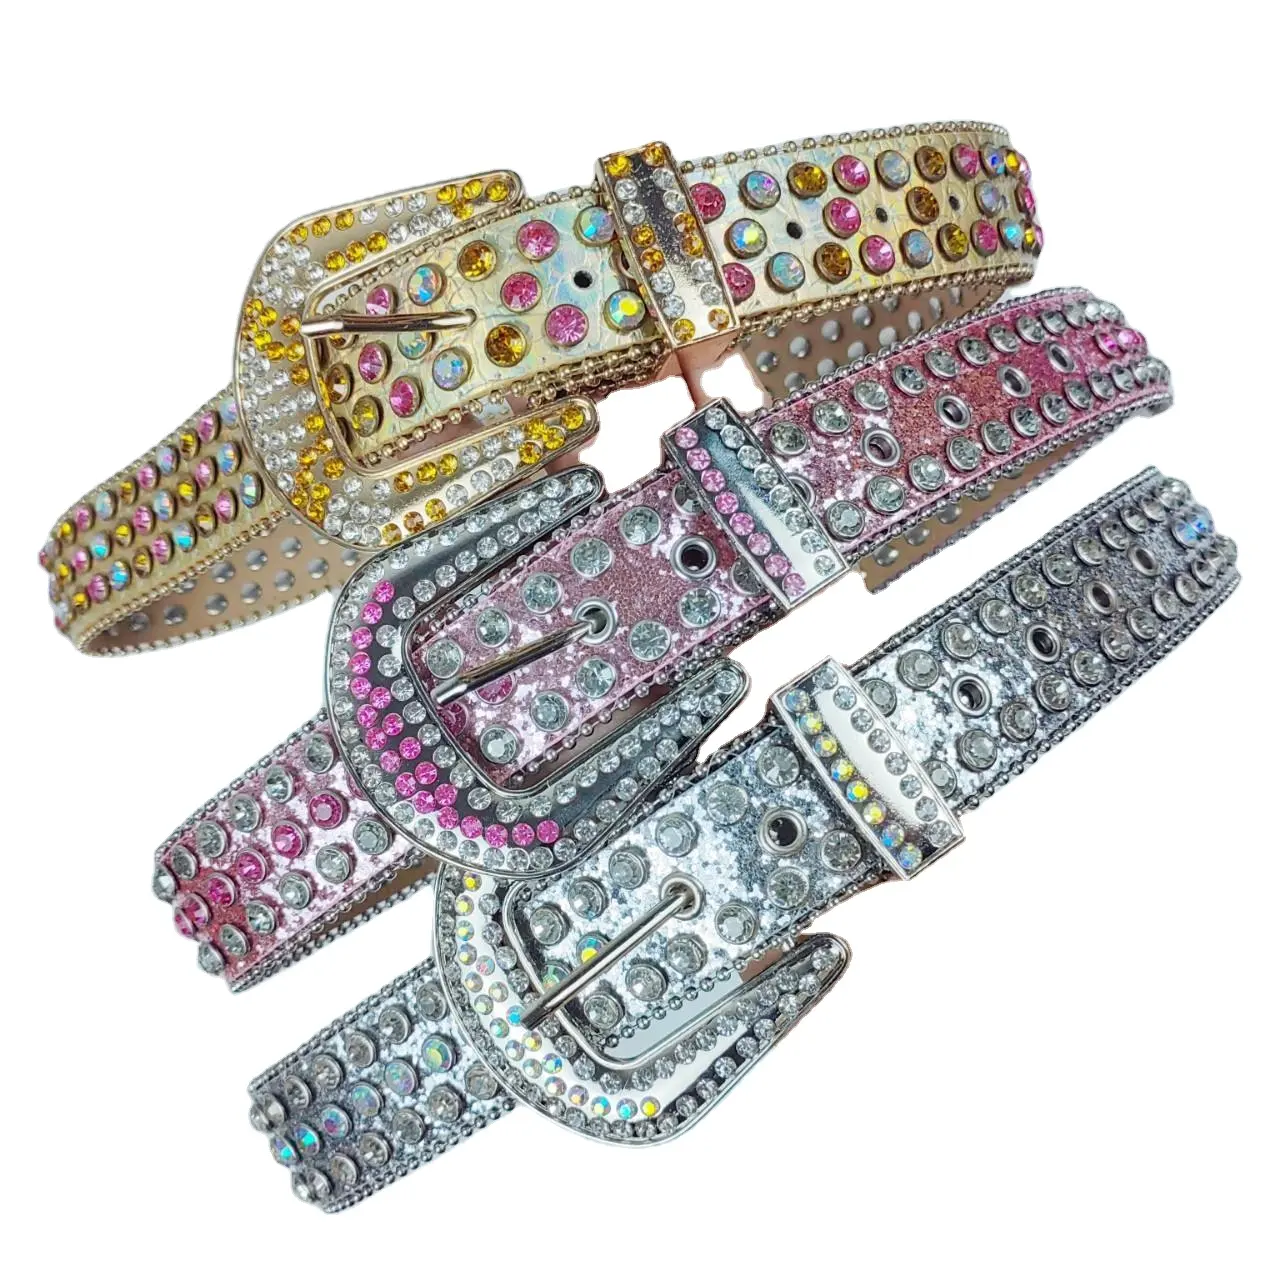 Großhandel individueller Strass Gürtel bunt Bling Bling Ledergürtel professioneller Lieferant Diamanten Strass